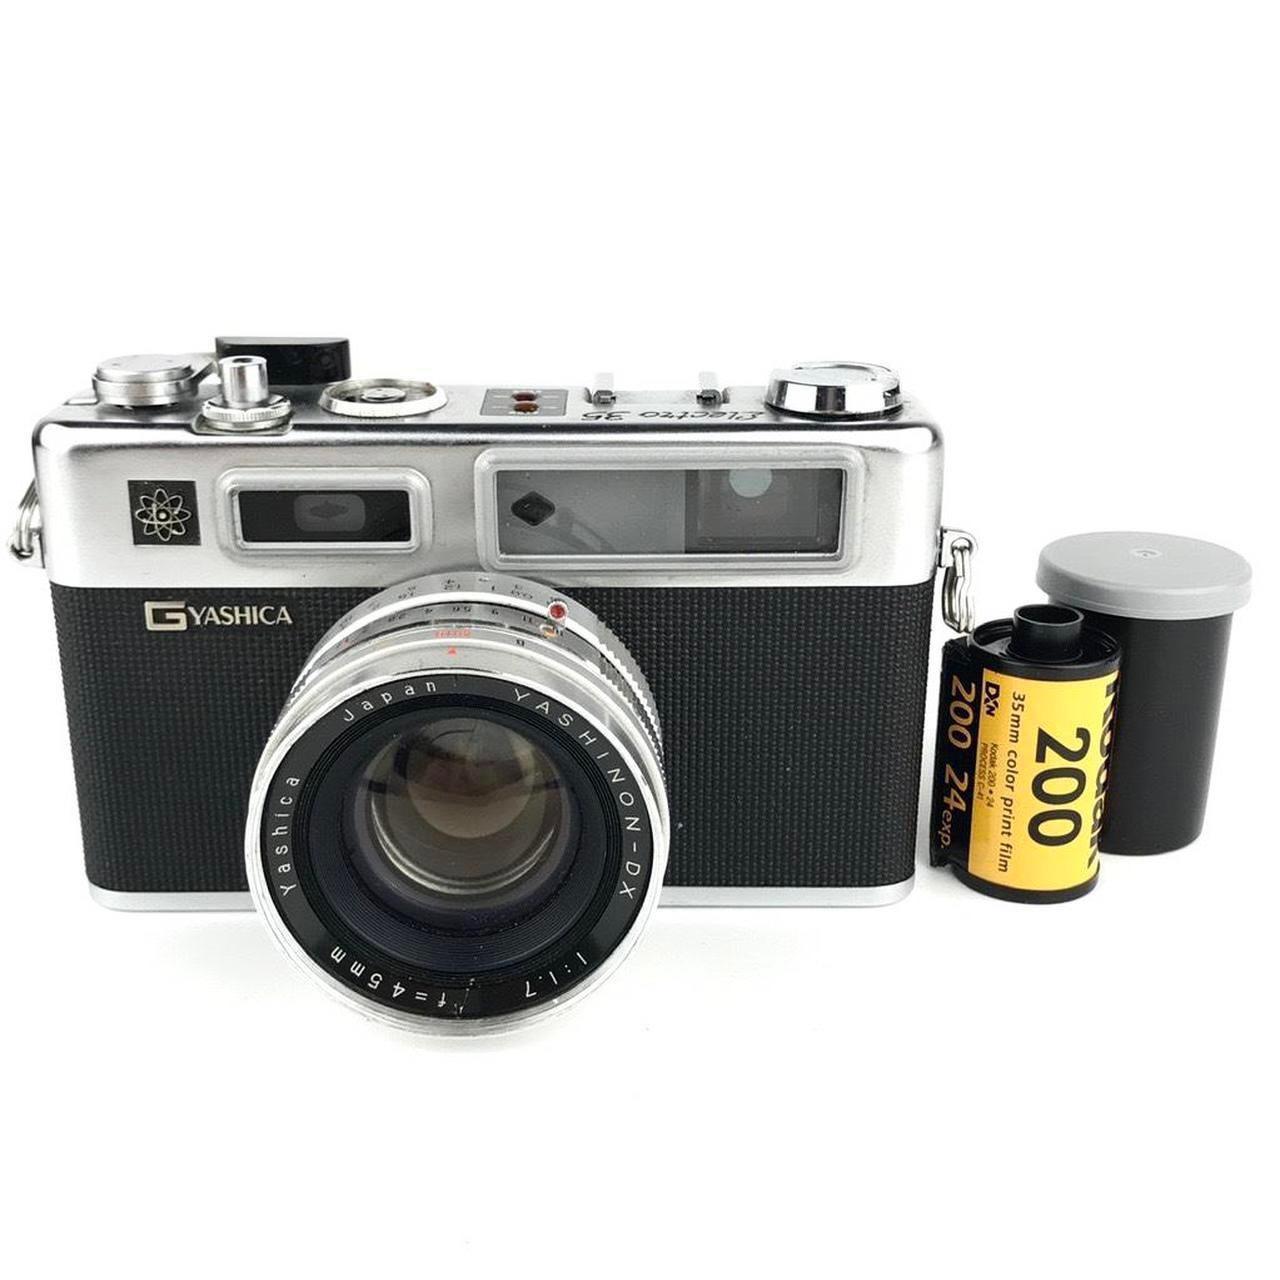 Product Image 1 - Yashica Electro 35 Film Camera